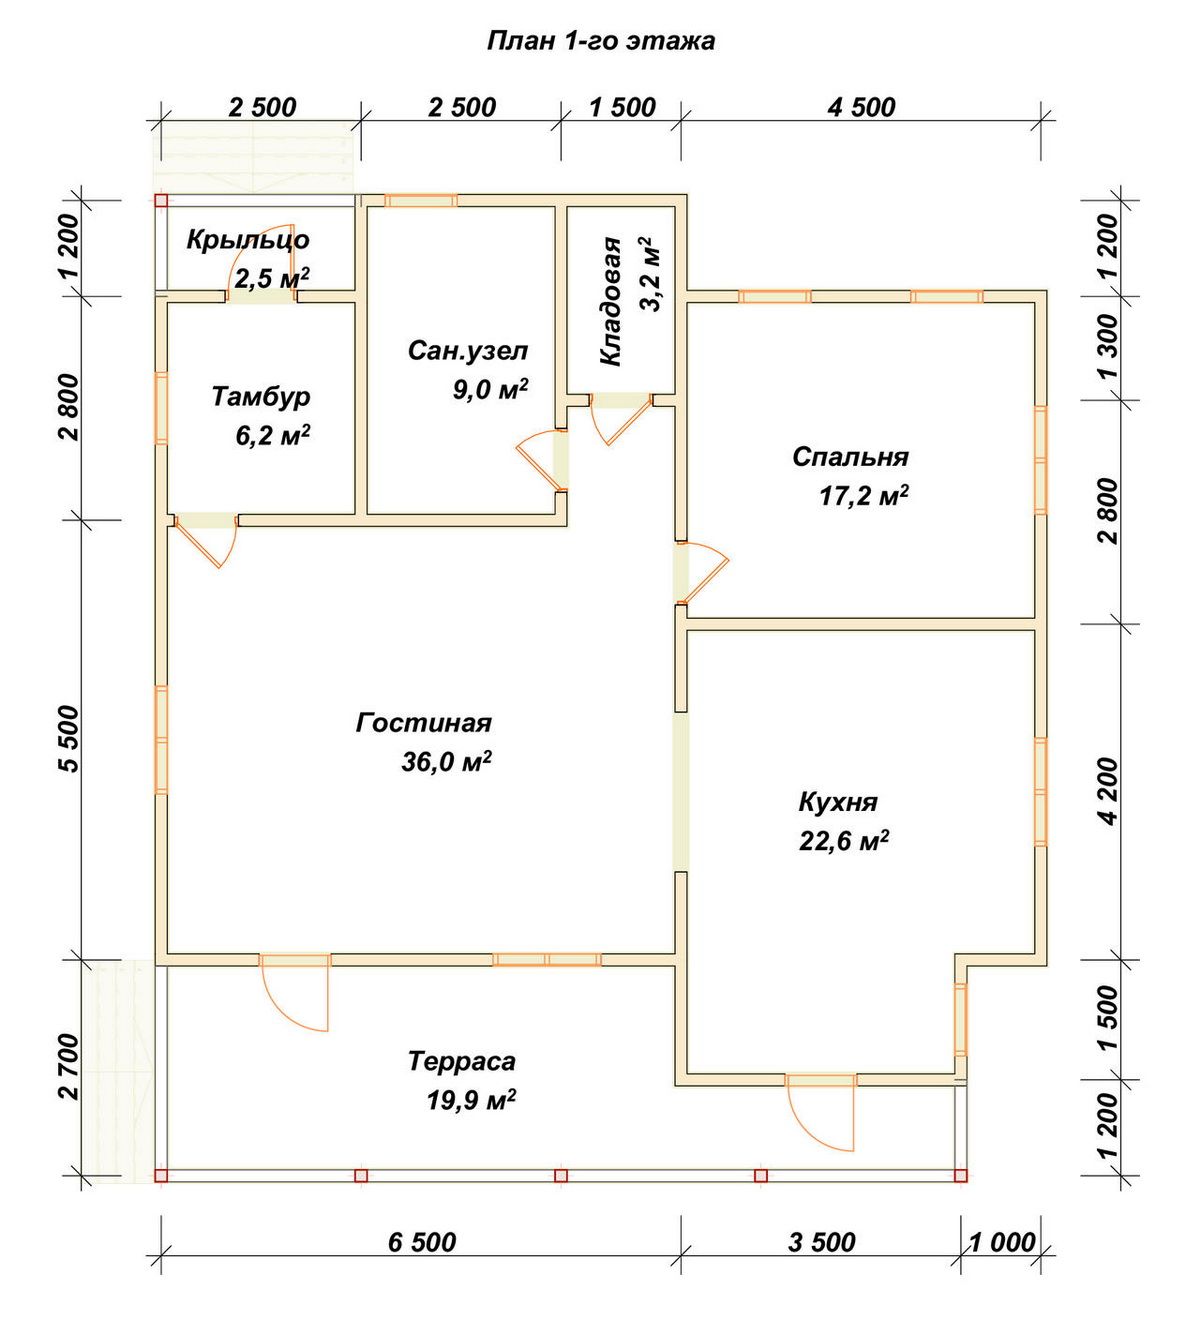 Планировка 1-го этаж дома ДБ-177